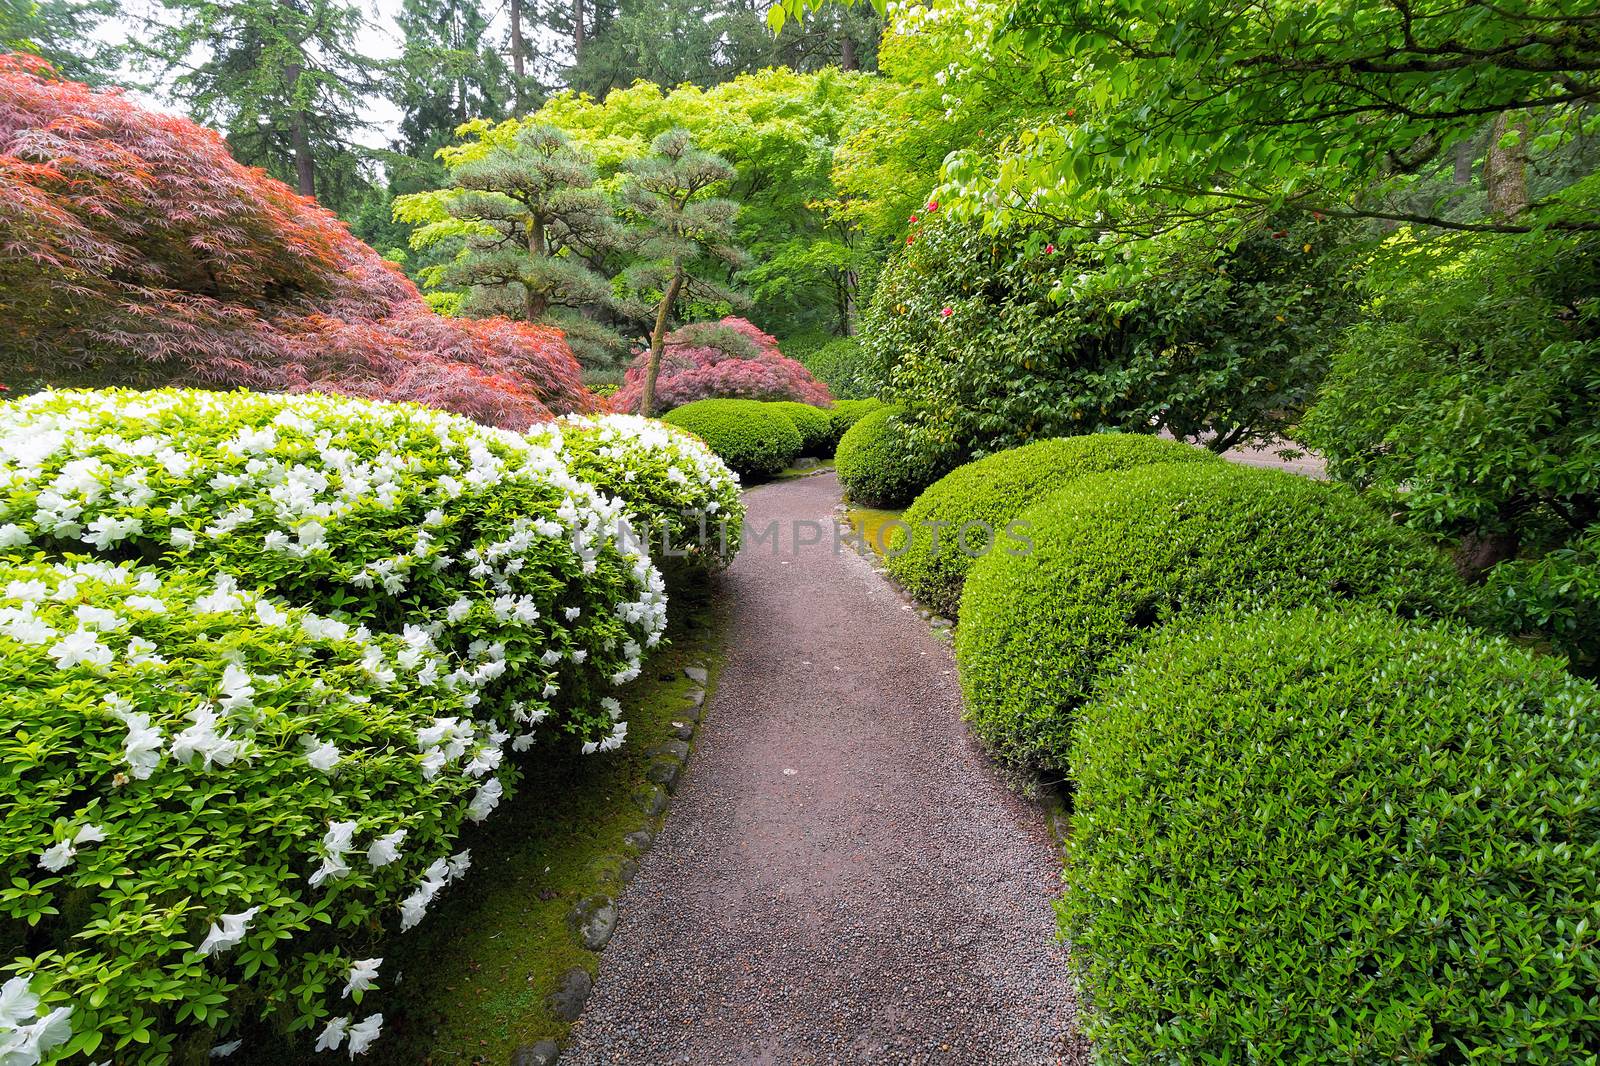 Stroling Garden Path in Japanese Garden by Davidgn